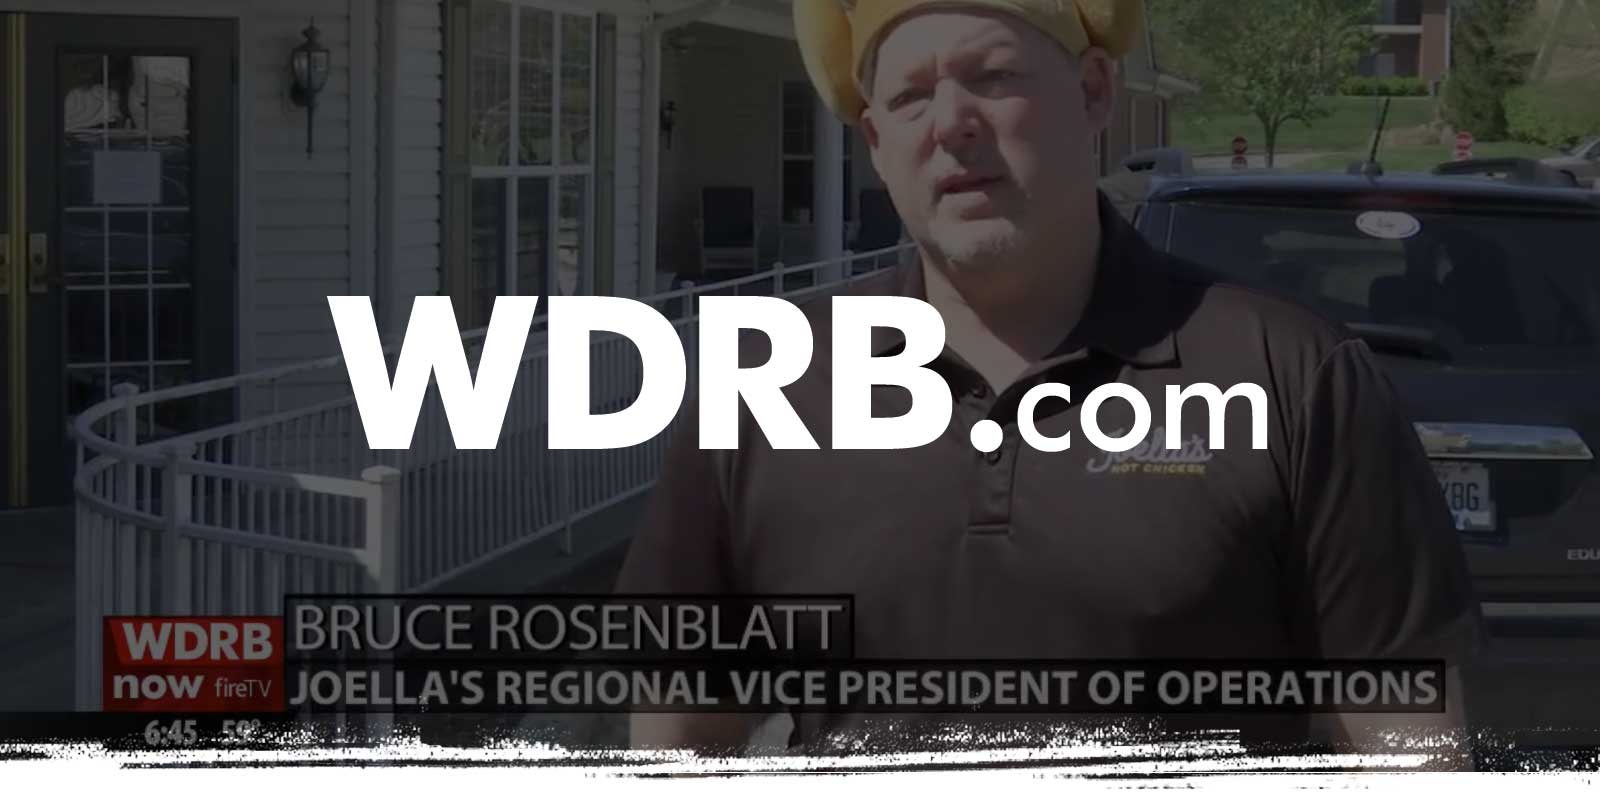 WDRB.com logo on video of Bruce Rosenblatt talking to reporter